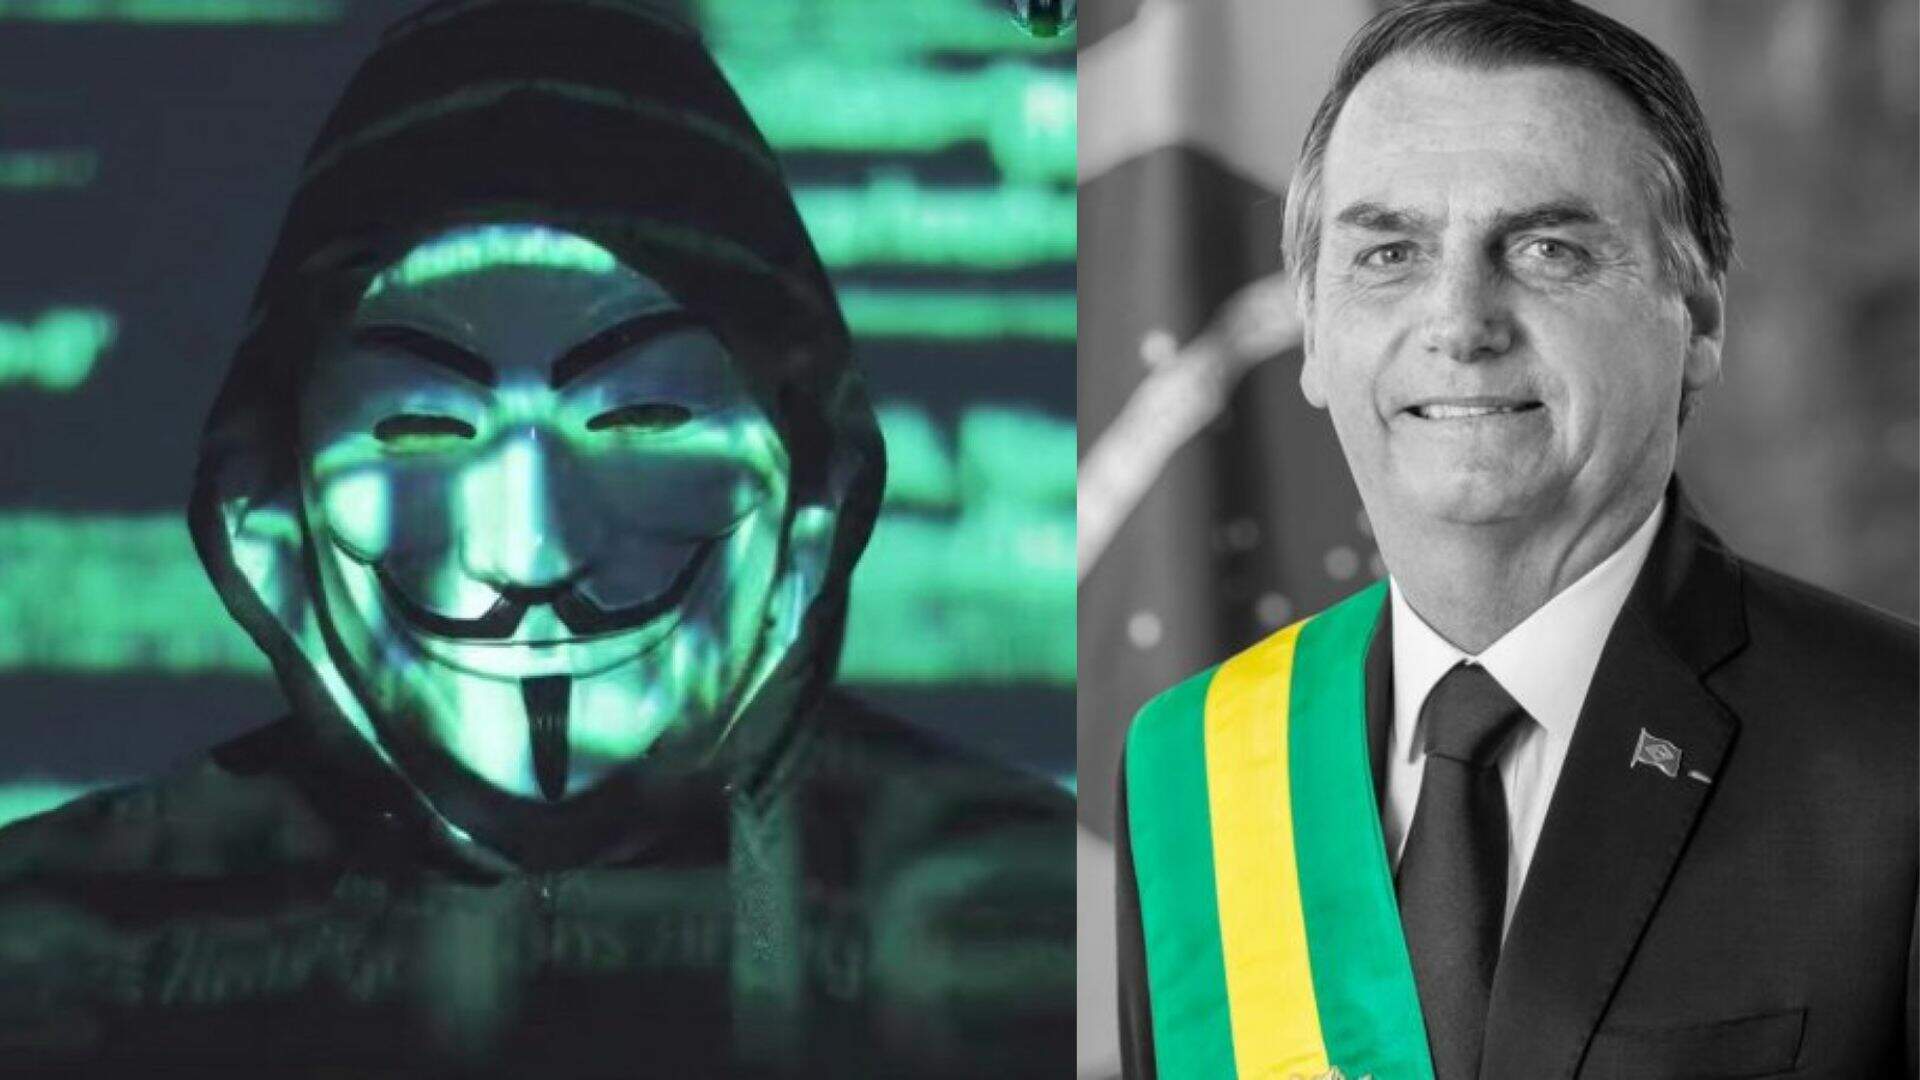 1 dia antes das Eleições, grupo de hackers ameaça Bolsonaro e expõe o que ninguém esperava - Metropolitana FM